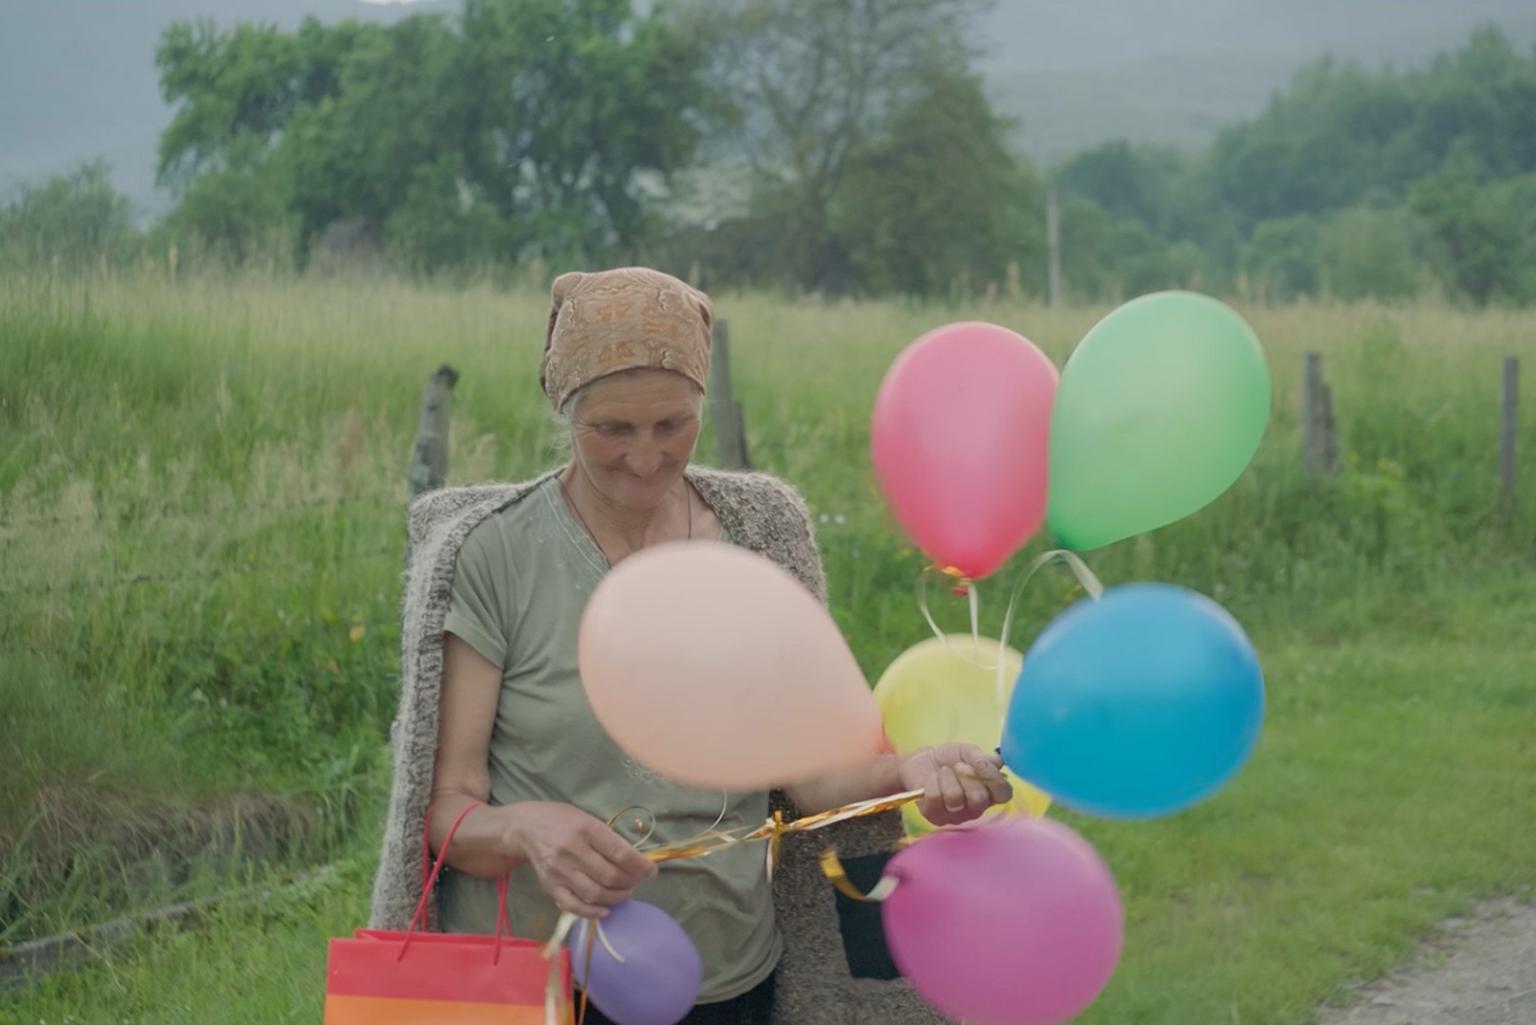 Eine ältere Frau blickt lächelnd auf mehrere bunte Luftballons, die sie in der Hand hält.